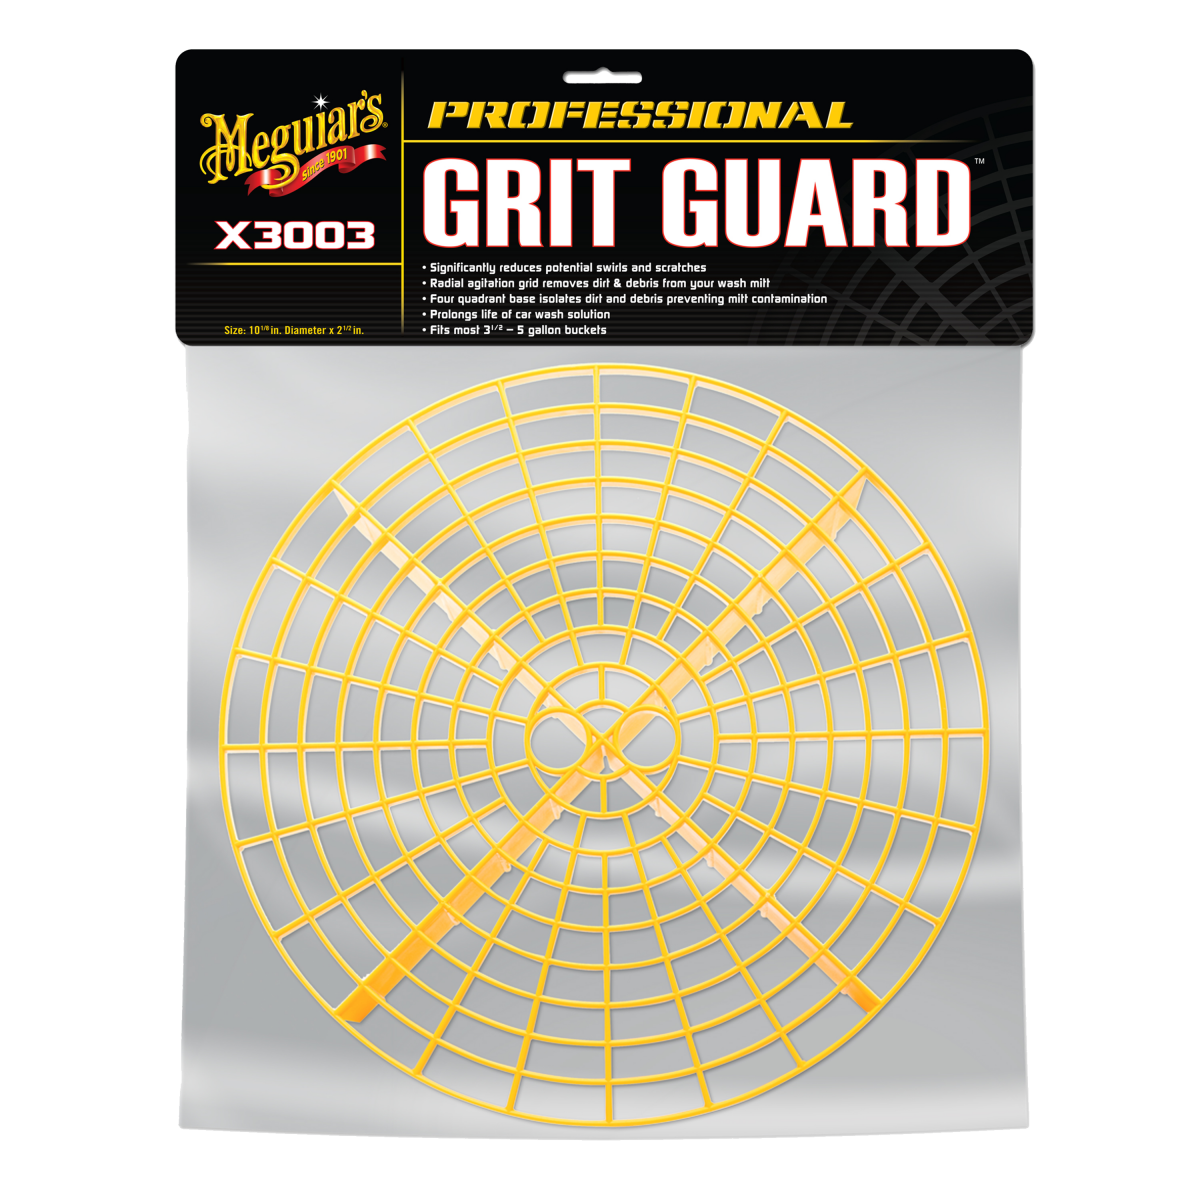  Meguiar's Grit guard